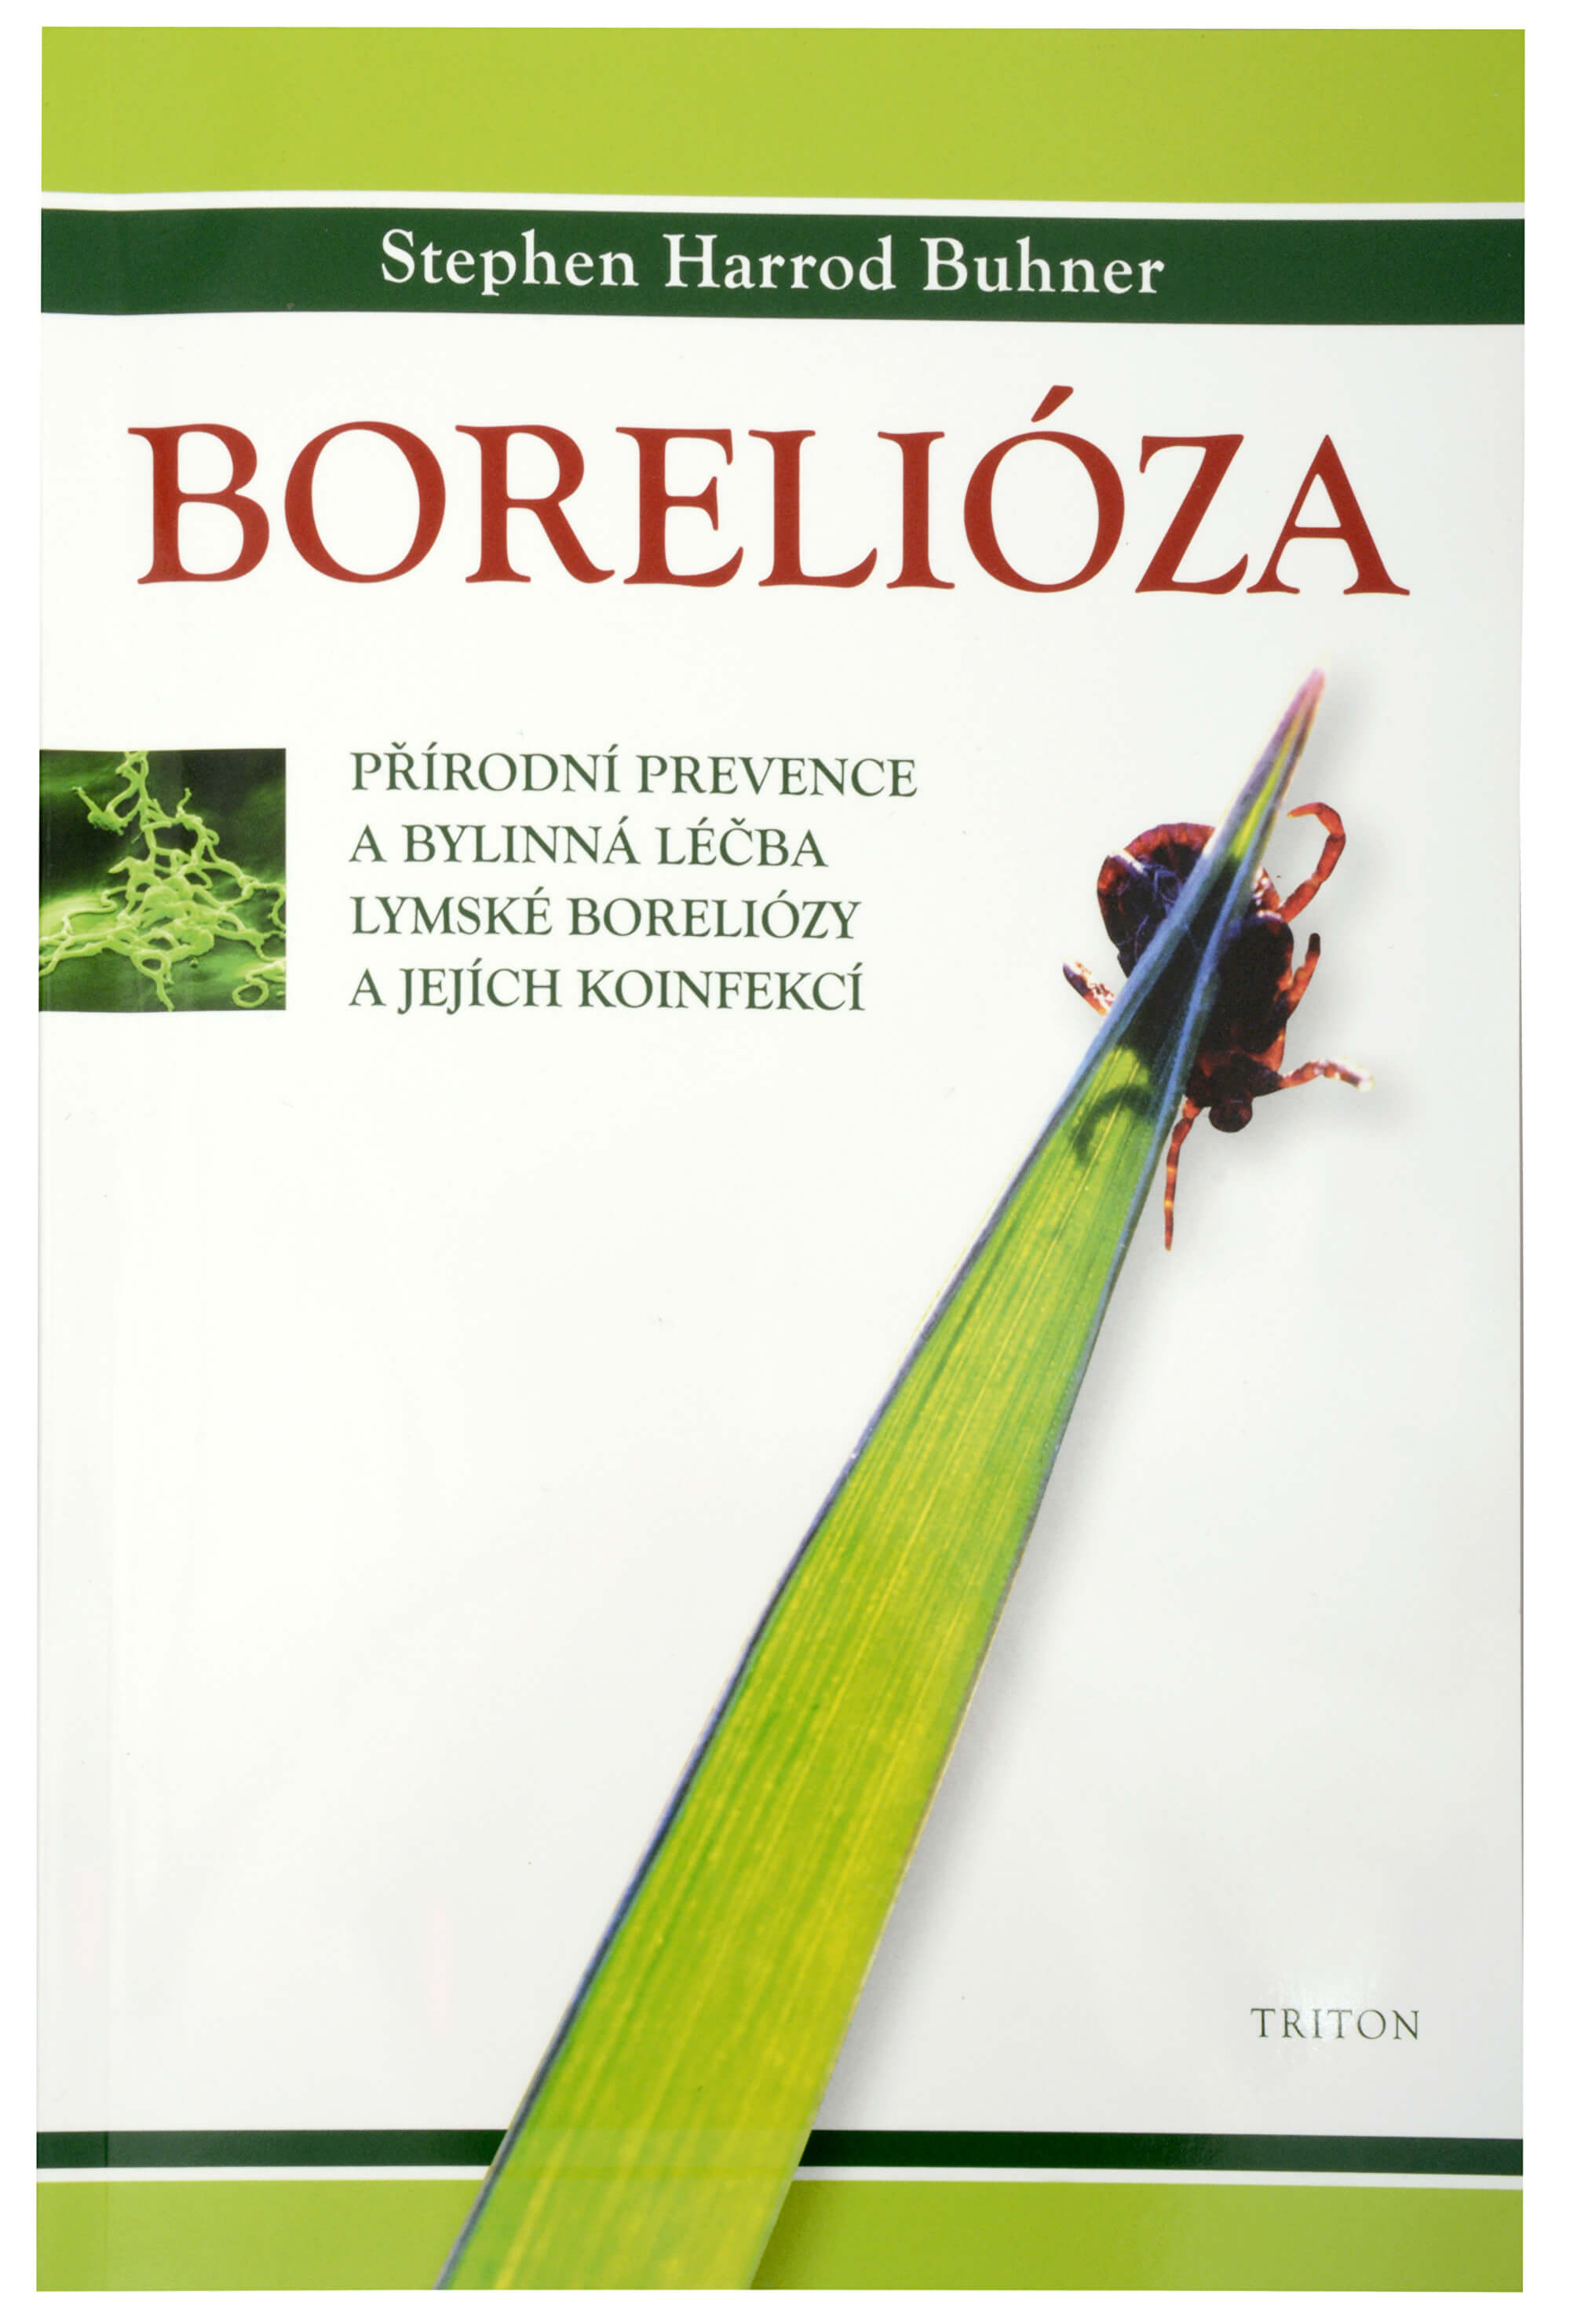 Zobrazit detail výrobku Knihy Borelióza (Stephen Harrod Buhner) + 2 měsíce na vrácení zboží